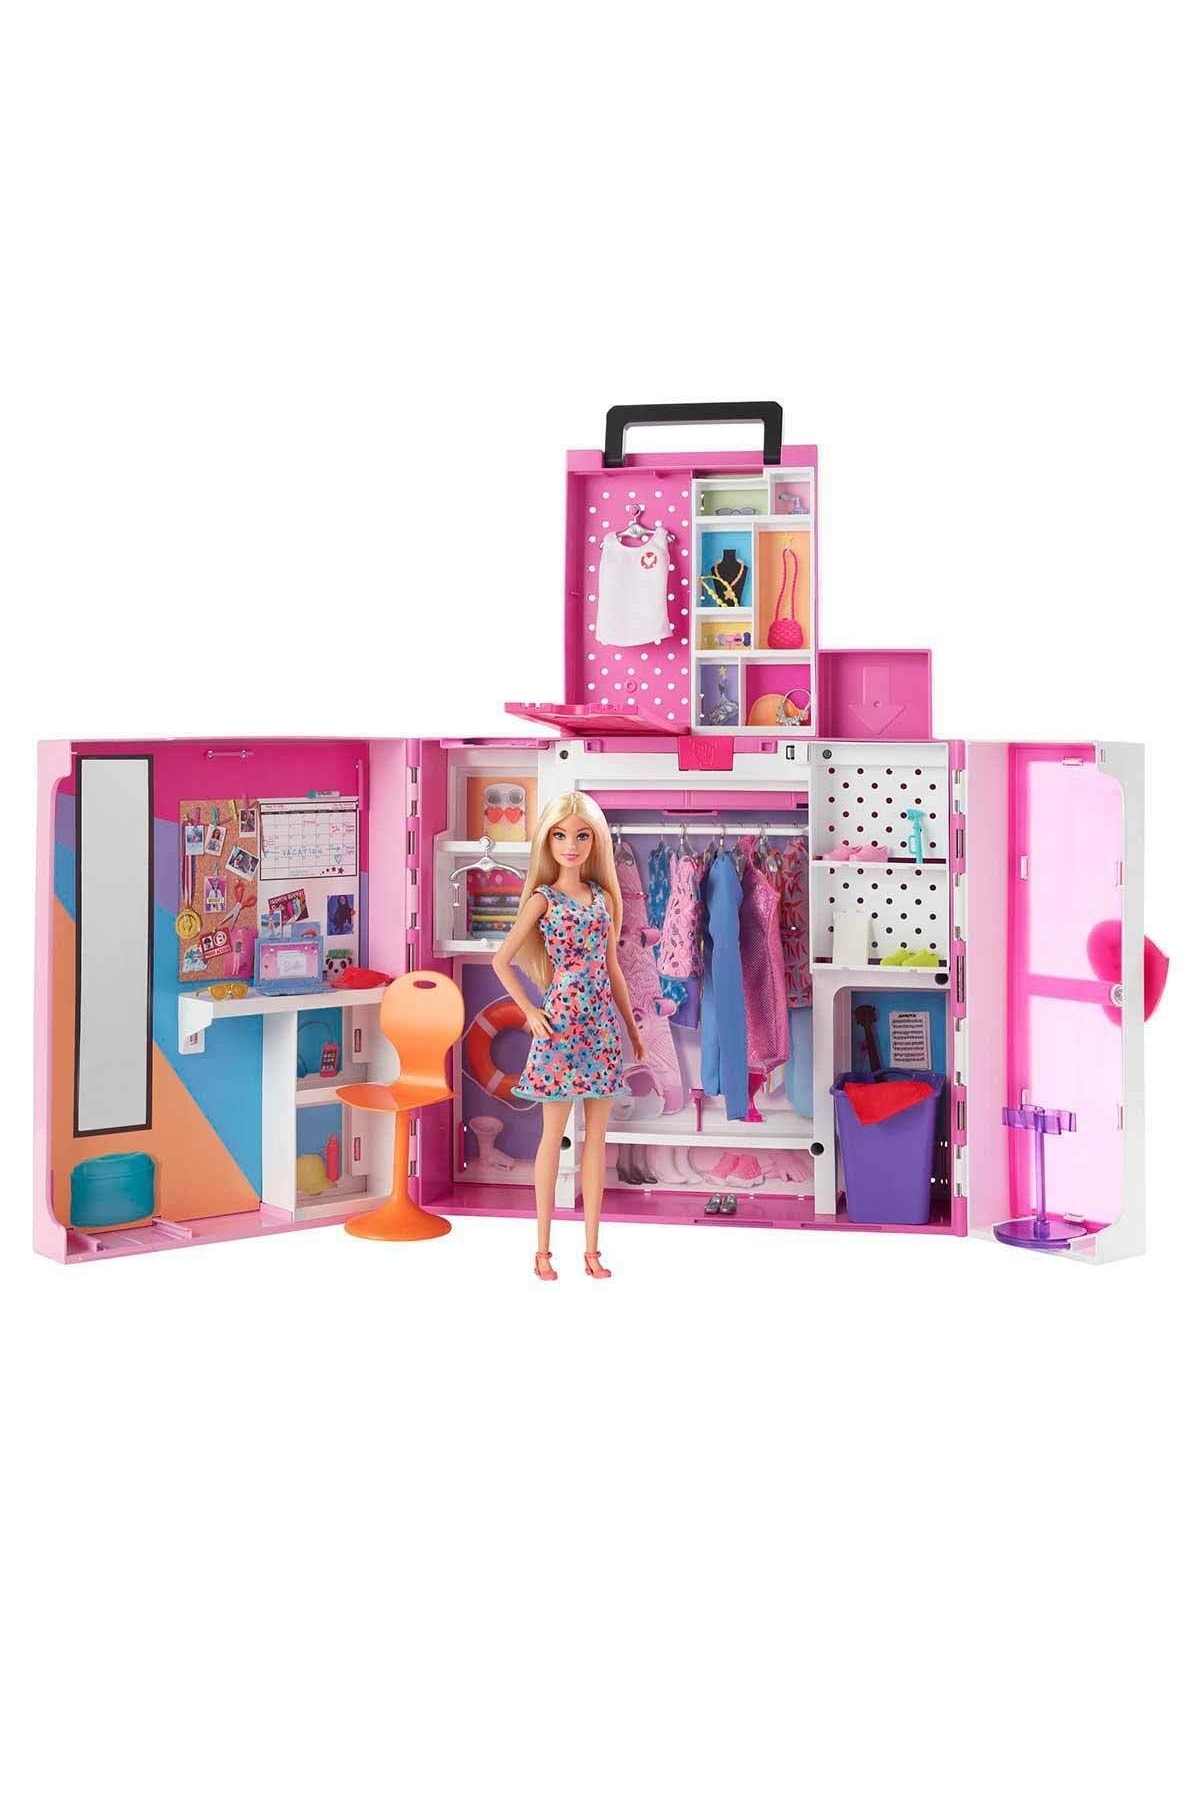 Barbie Ve Yeni Rüya Dolabı Oyun Seti Hgx57